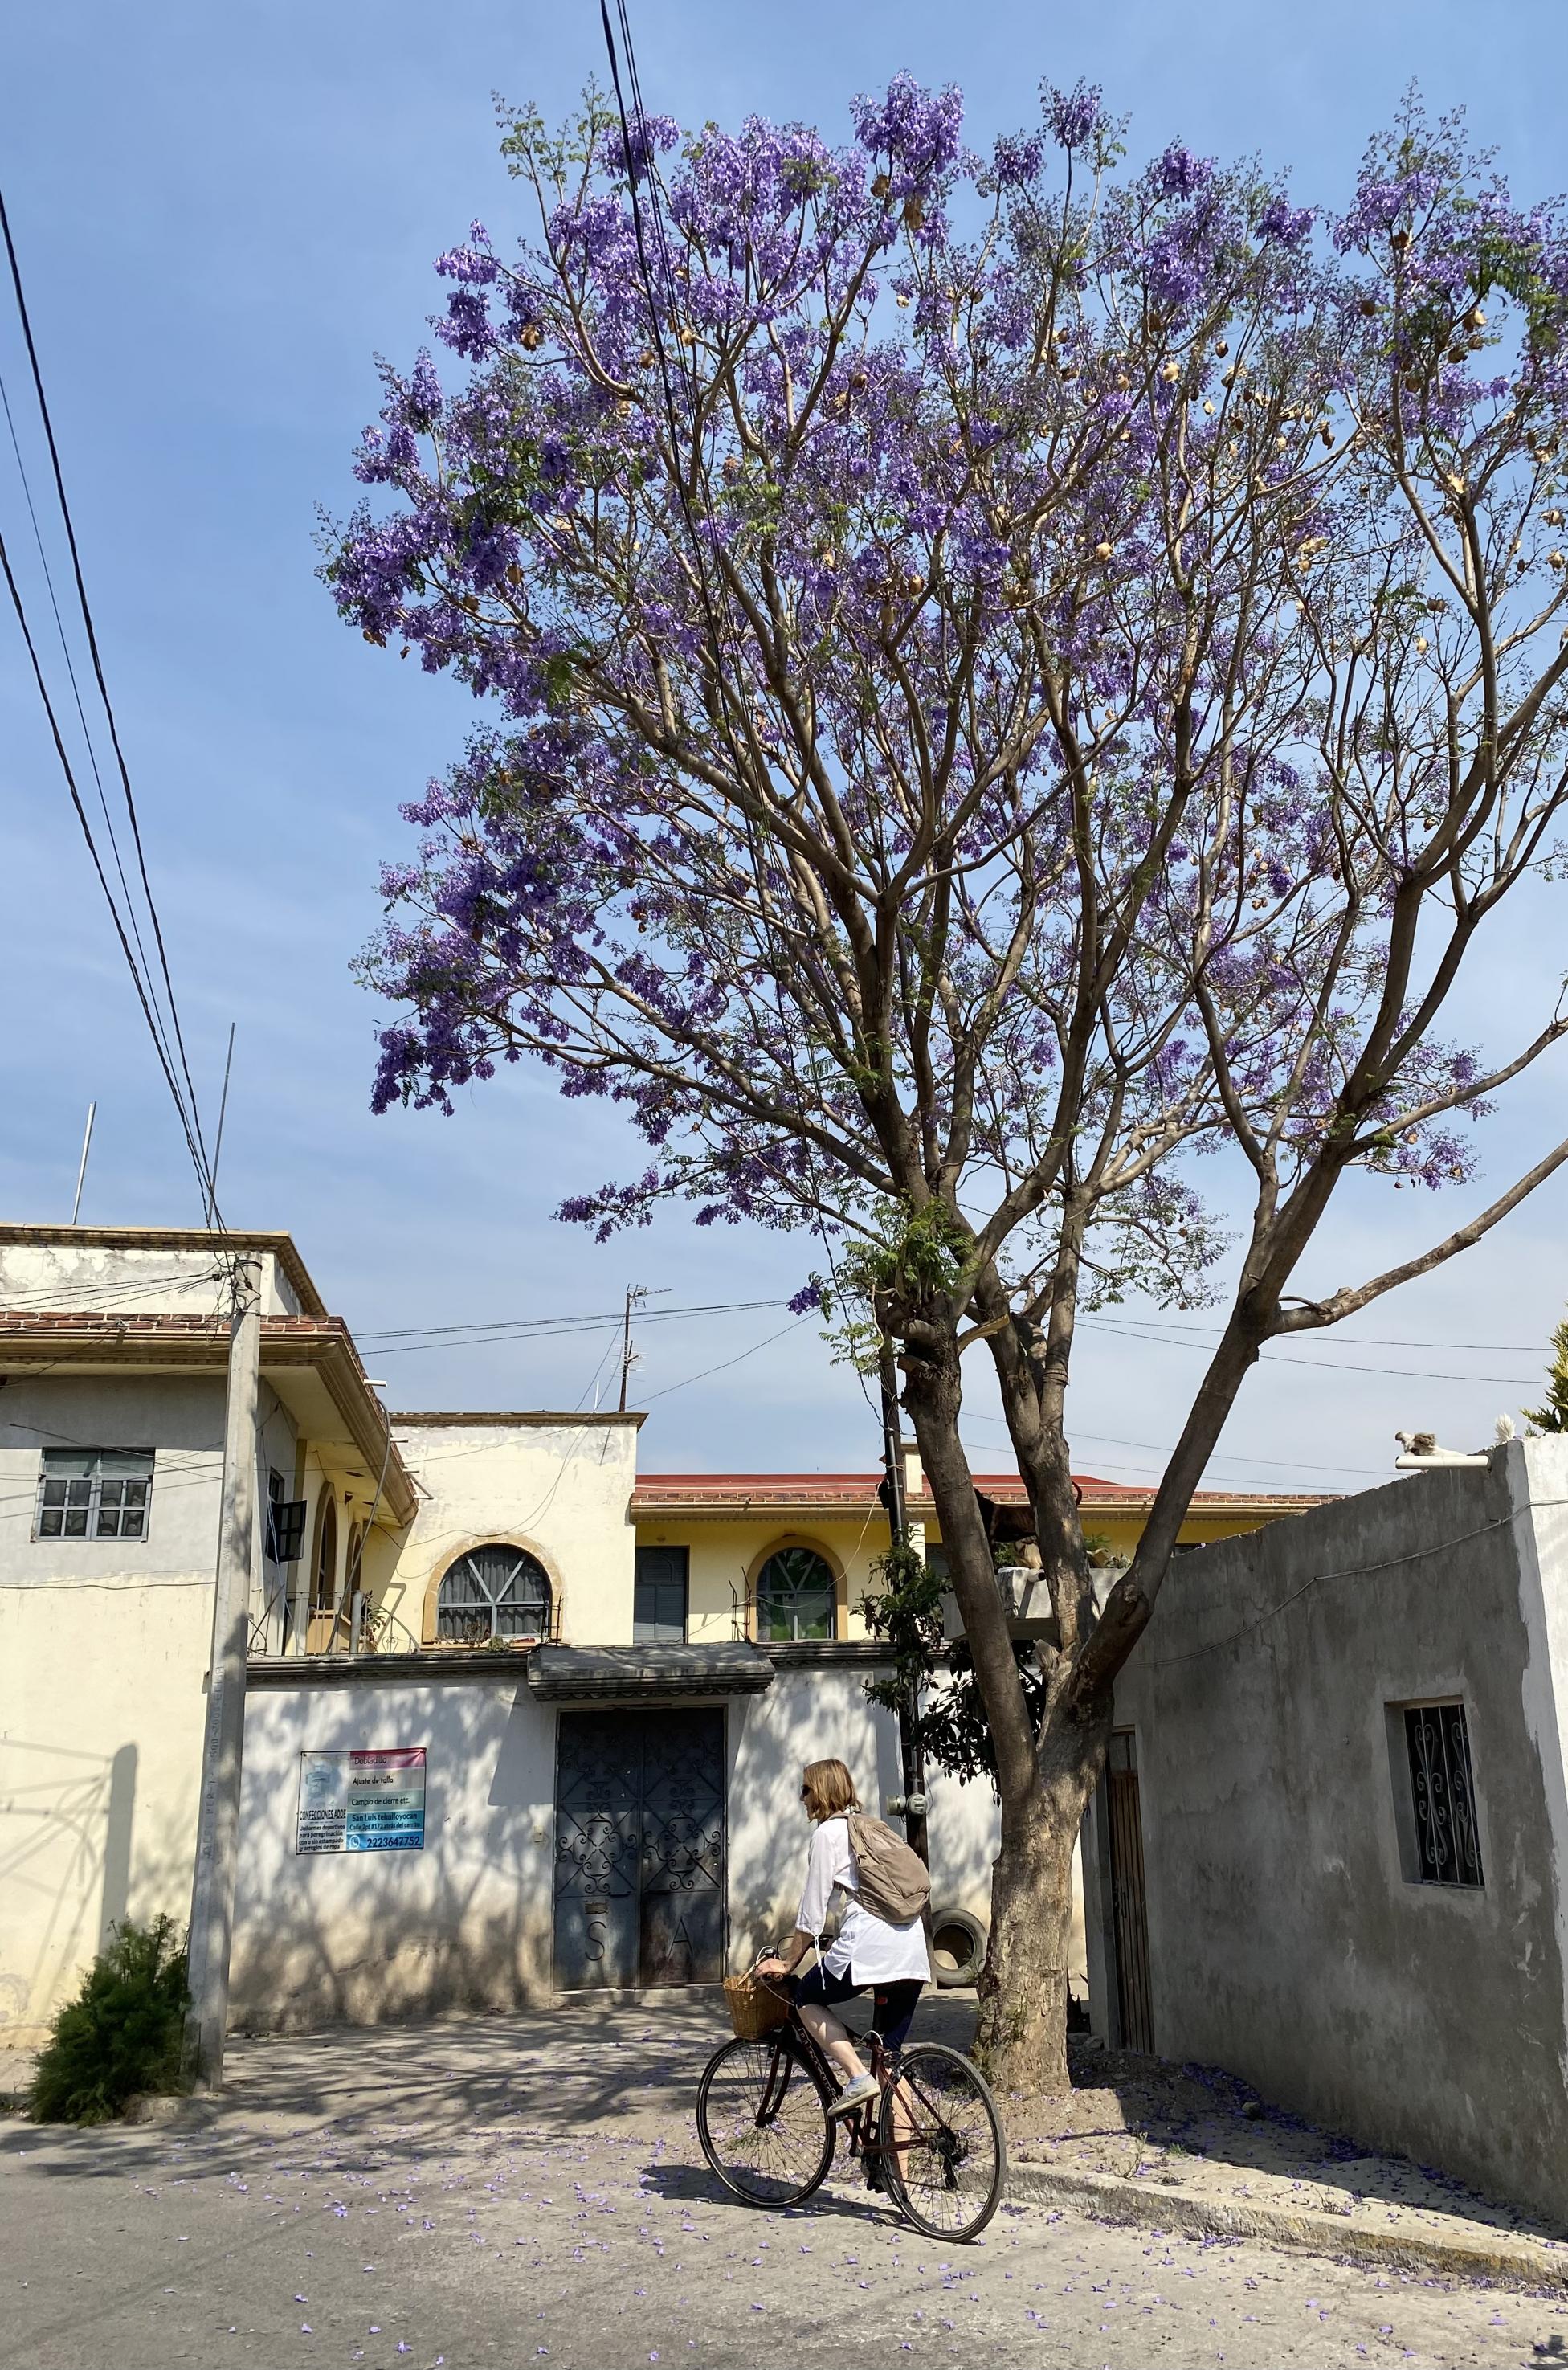 Sandra Weiss von schräg hinten, wie sie unter einem blühenden Jacaranda-Baum an einfachen, ländlichen Häusern vorbeifährt.